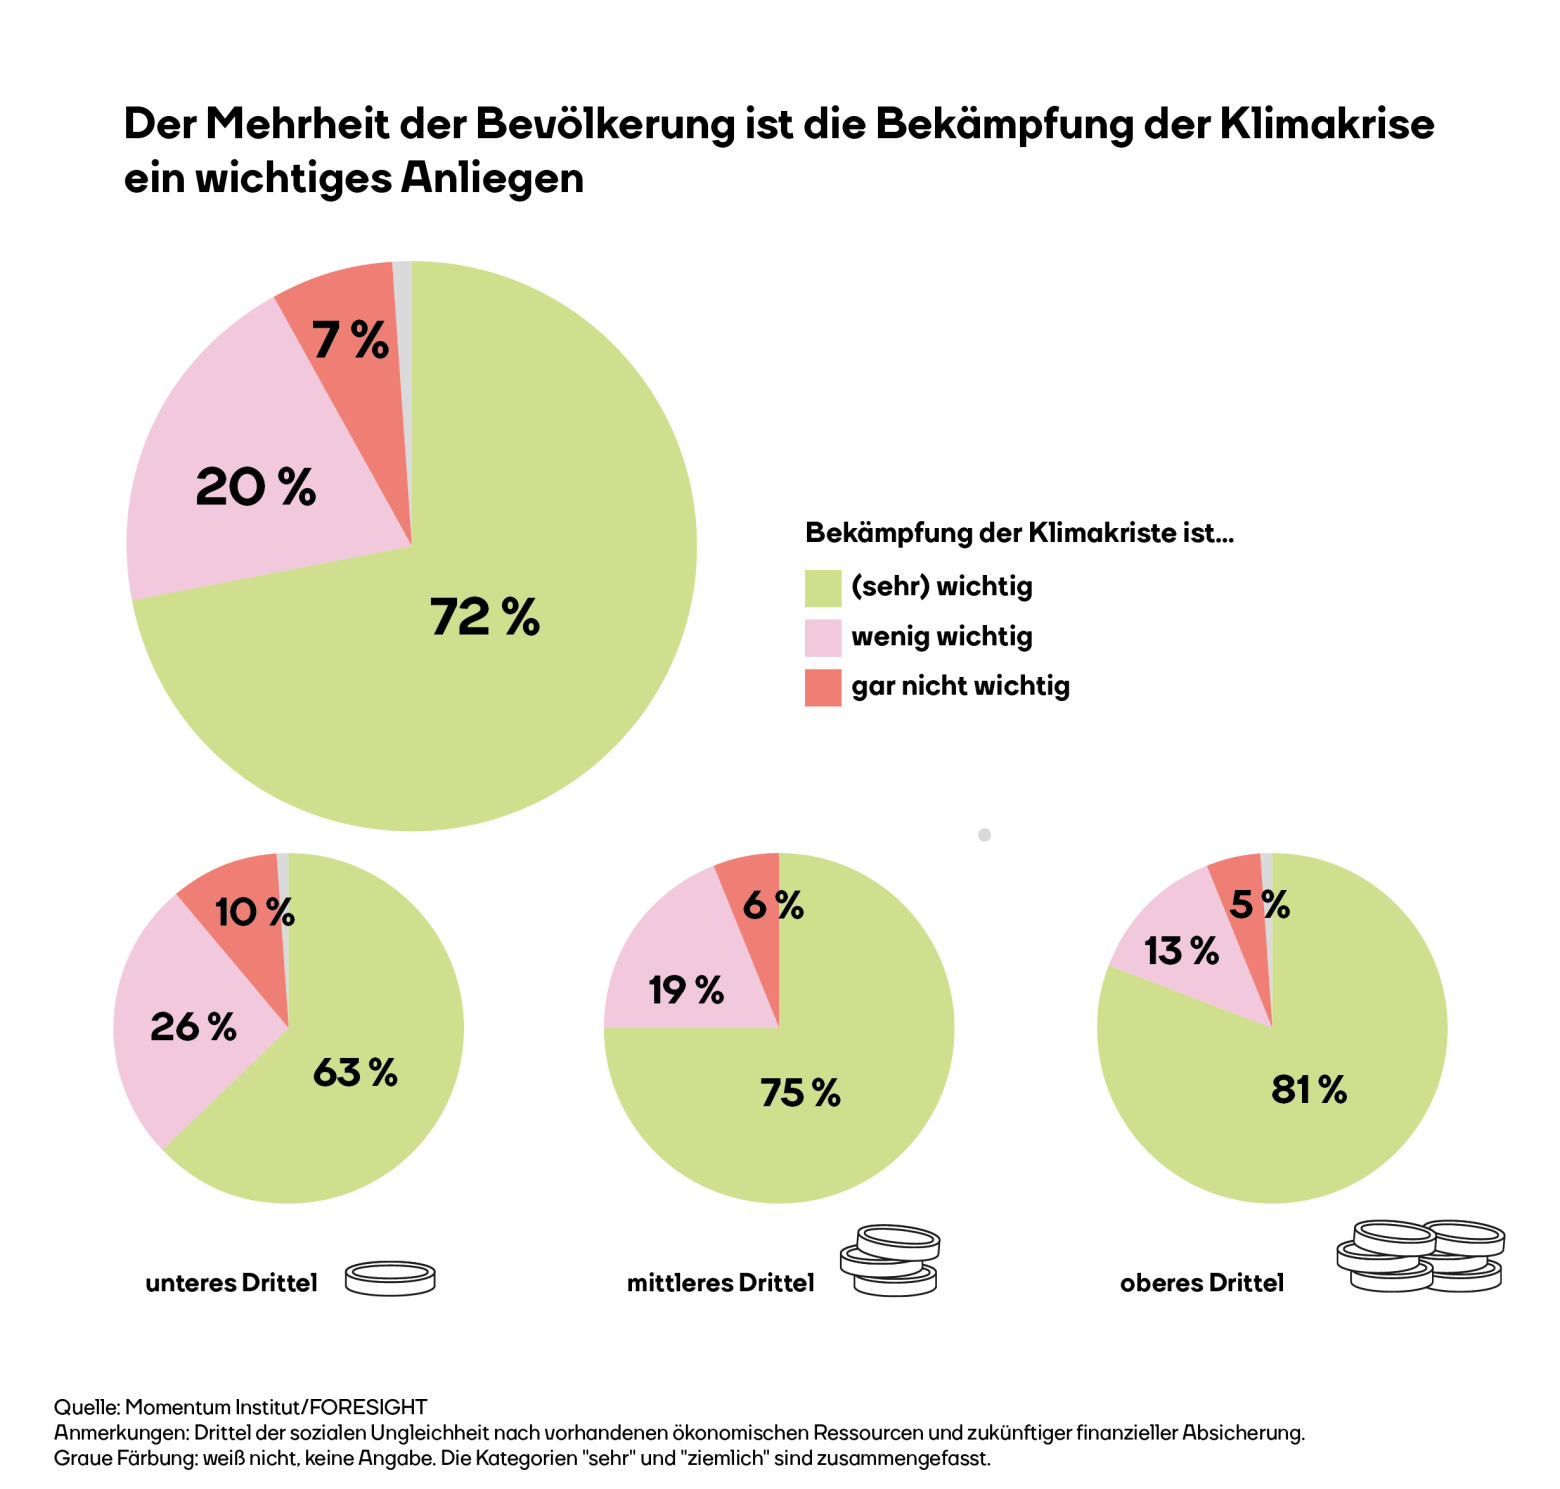 Die Grafik zeigt, dass dem Großteil der Bevölkerung in Österreich Klimaschutz wichtig oder sehr wichtig ist (72 %). Im untersten Einkommens-Drittel sind es 63 %, im mittleren 75 % und im obersten 81 %.